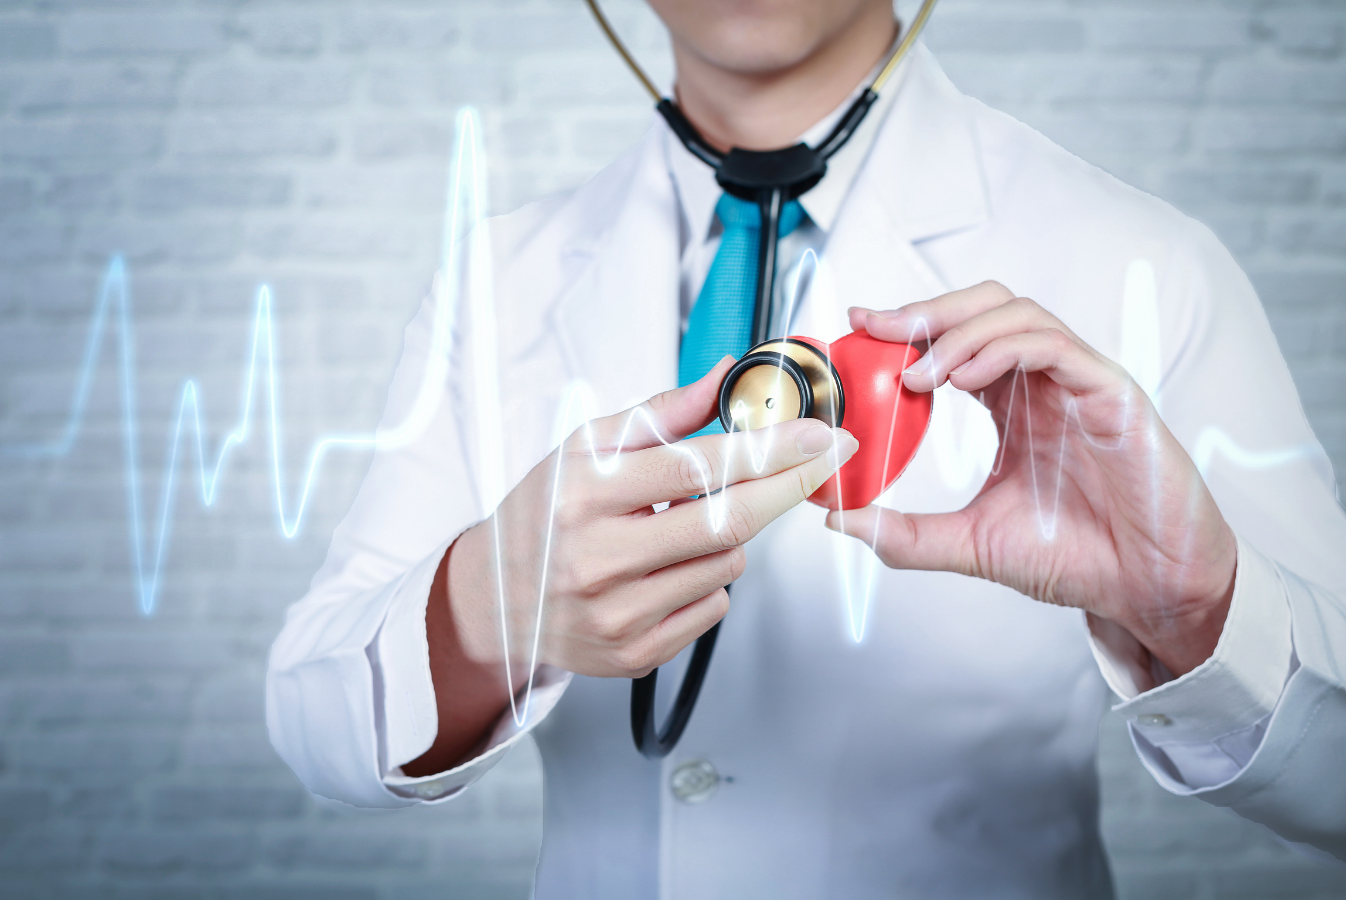 Najnowsze technologie medyczne dostępne dla pacjentów kardiologicznych.  Lepsza jakość diagnostyki i leczenia na Podbeskidziu.